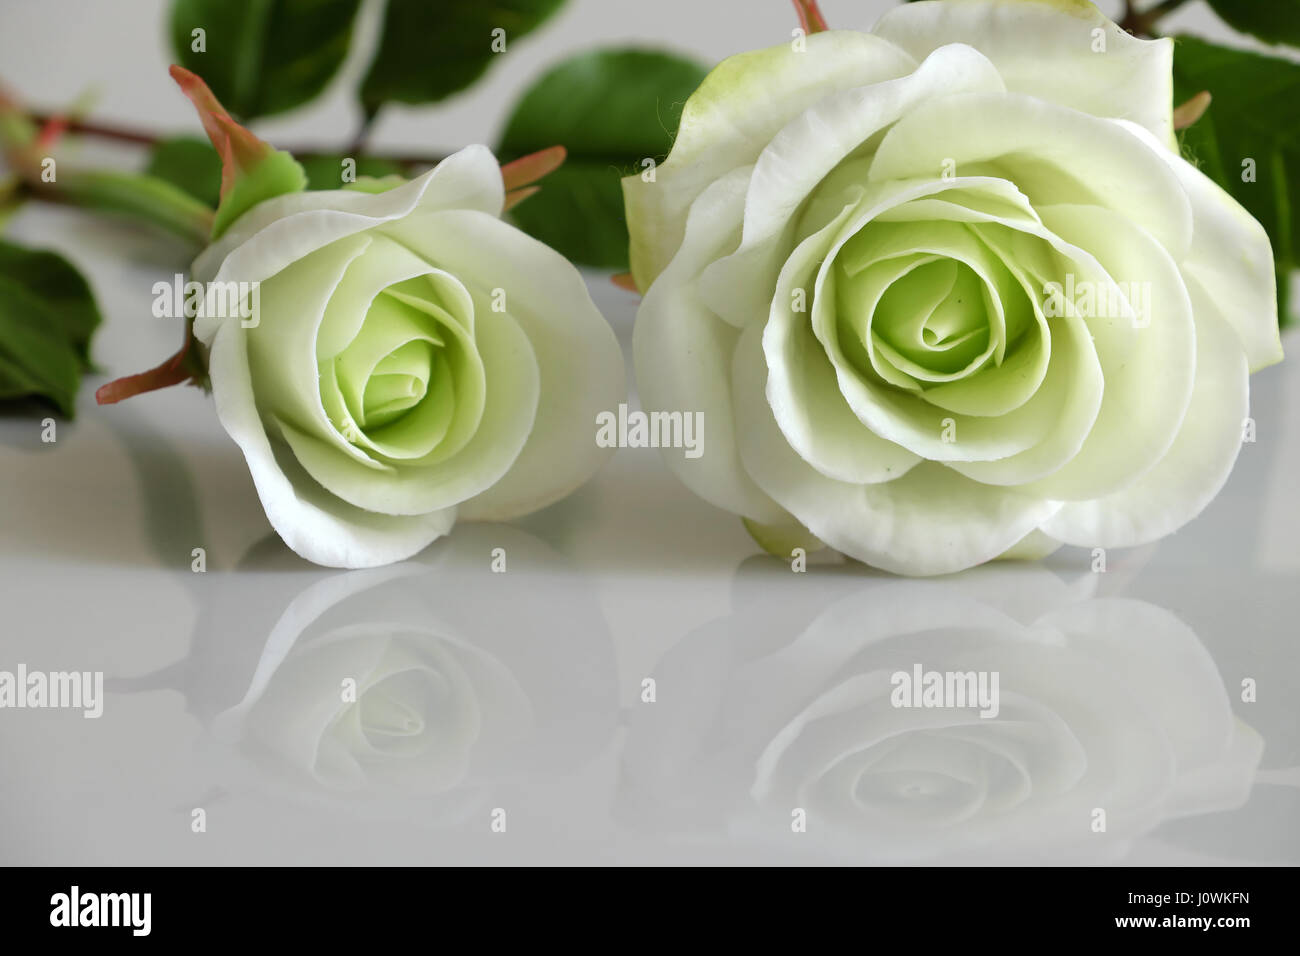 L'art d'argile merveilleux avec des roses blanches reflètent de fleurs sur fond blanc, de belles fleurs artificielles de l'artisanat habile avec Banque D'Images